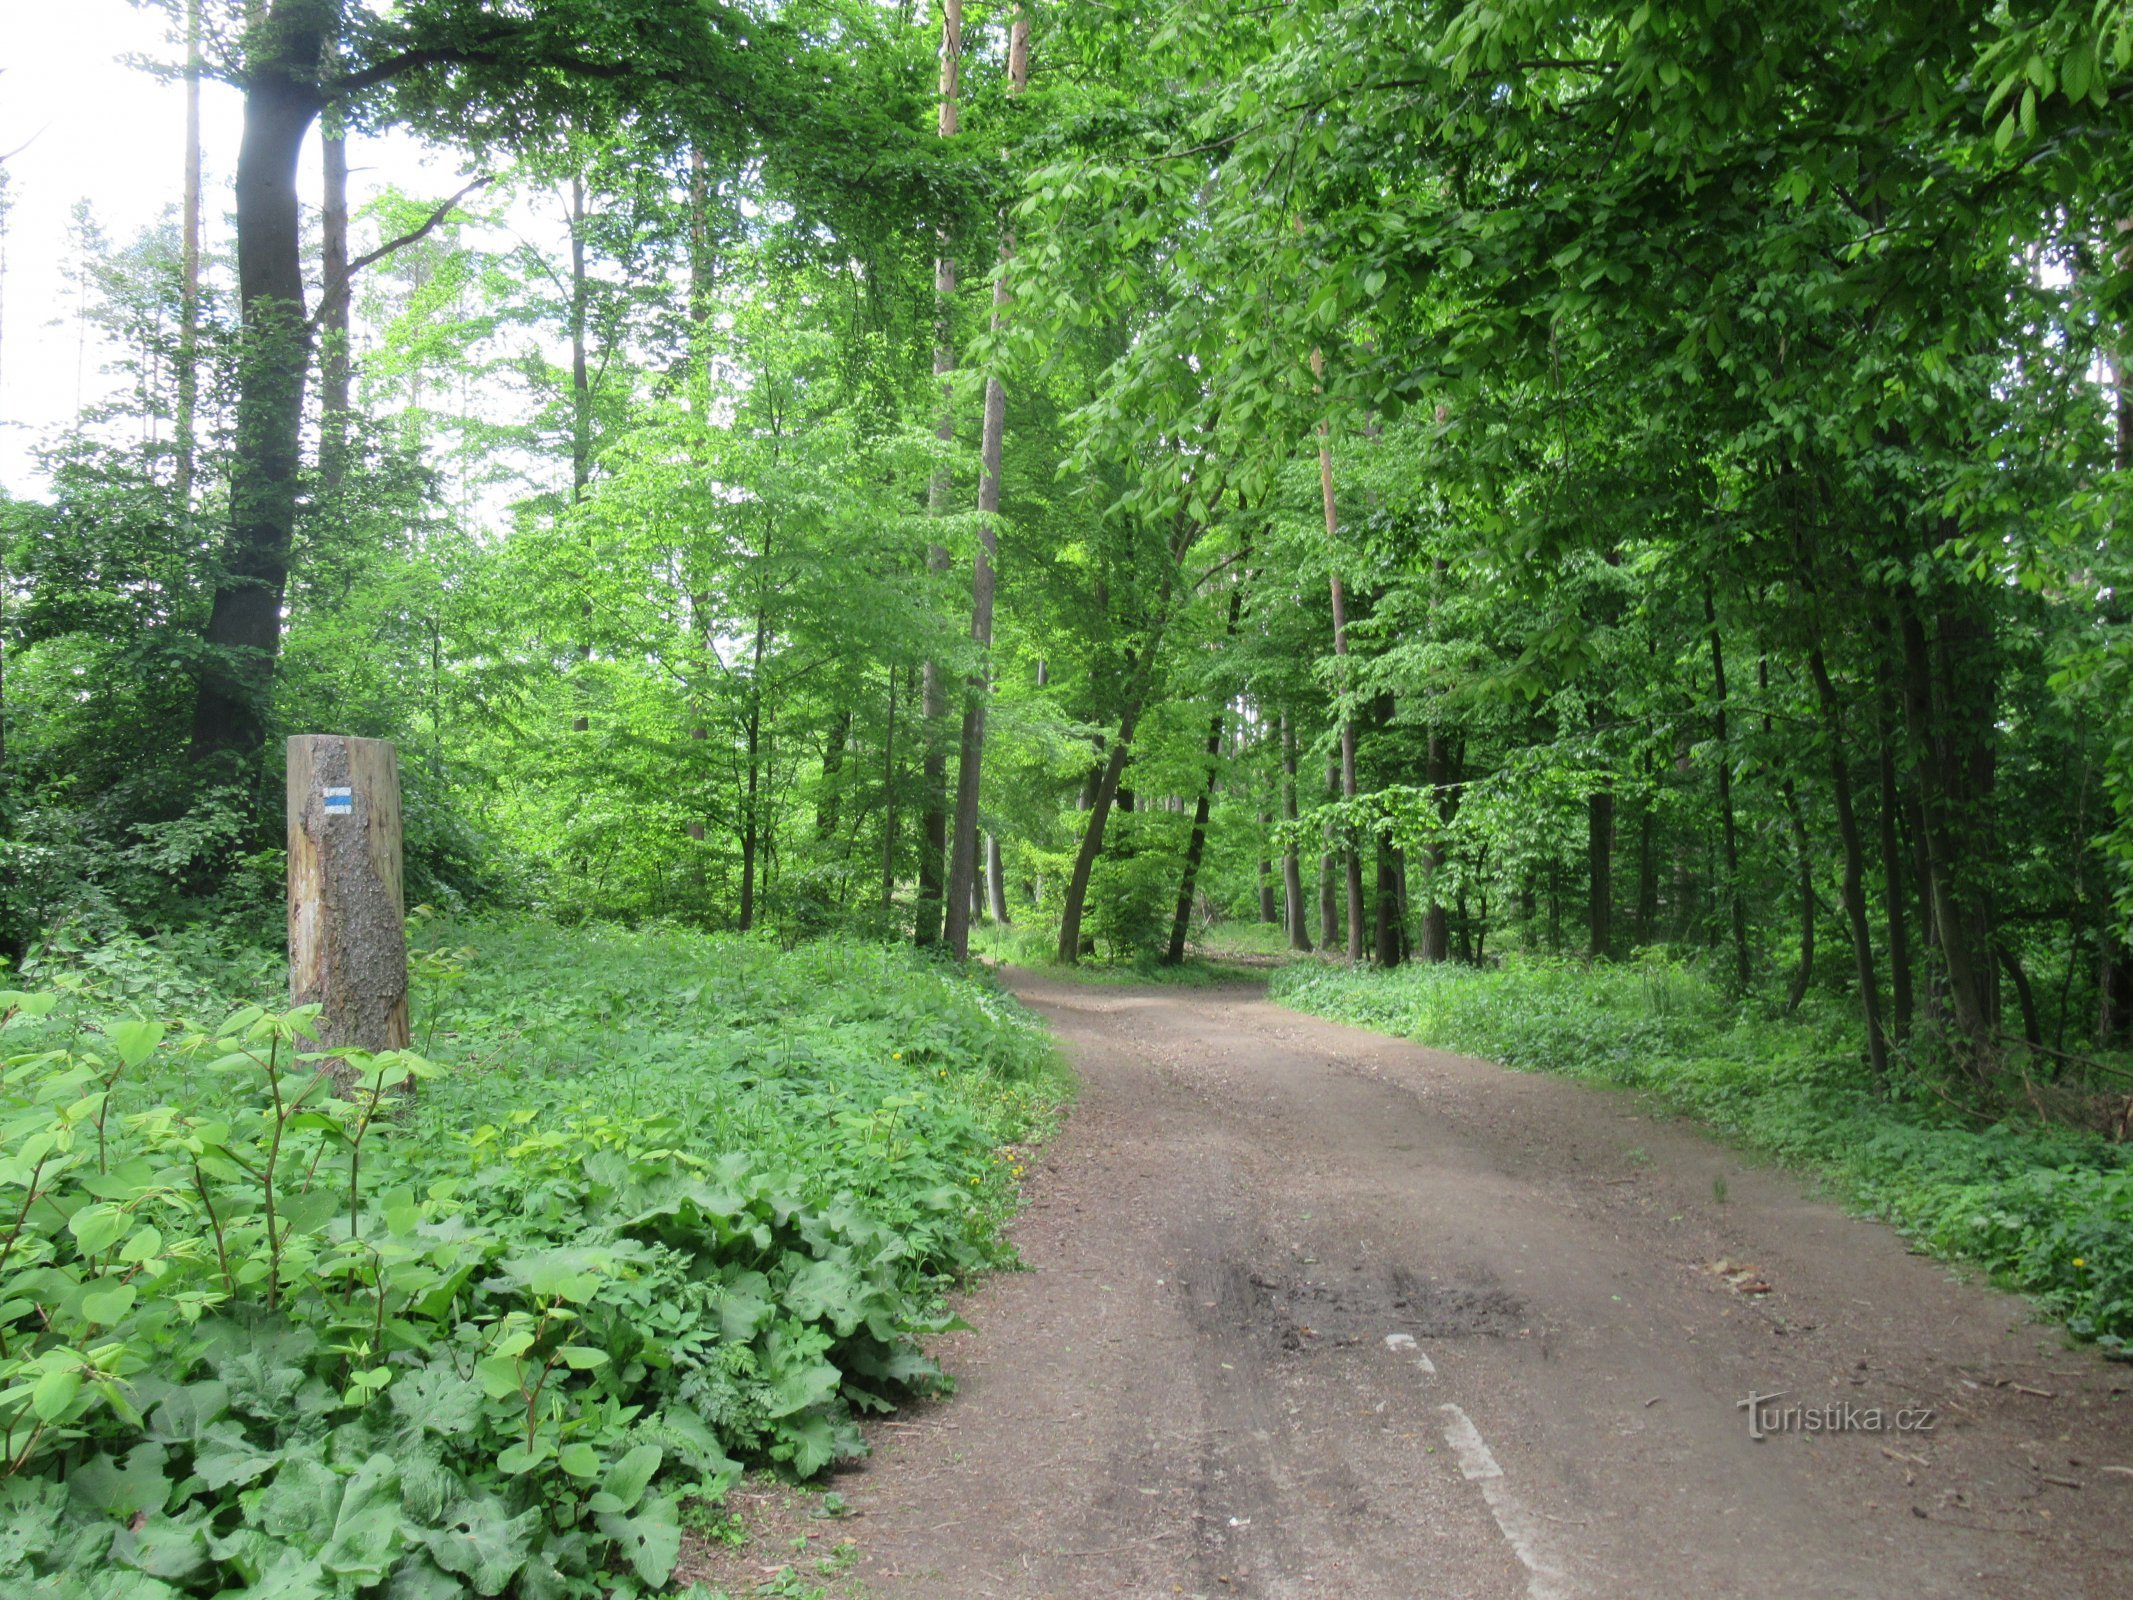 Il percorso si snoda principalmente attraverso boschi di latifoglie